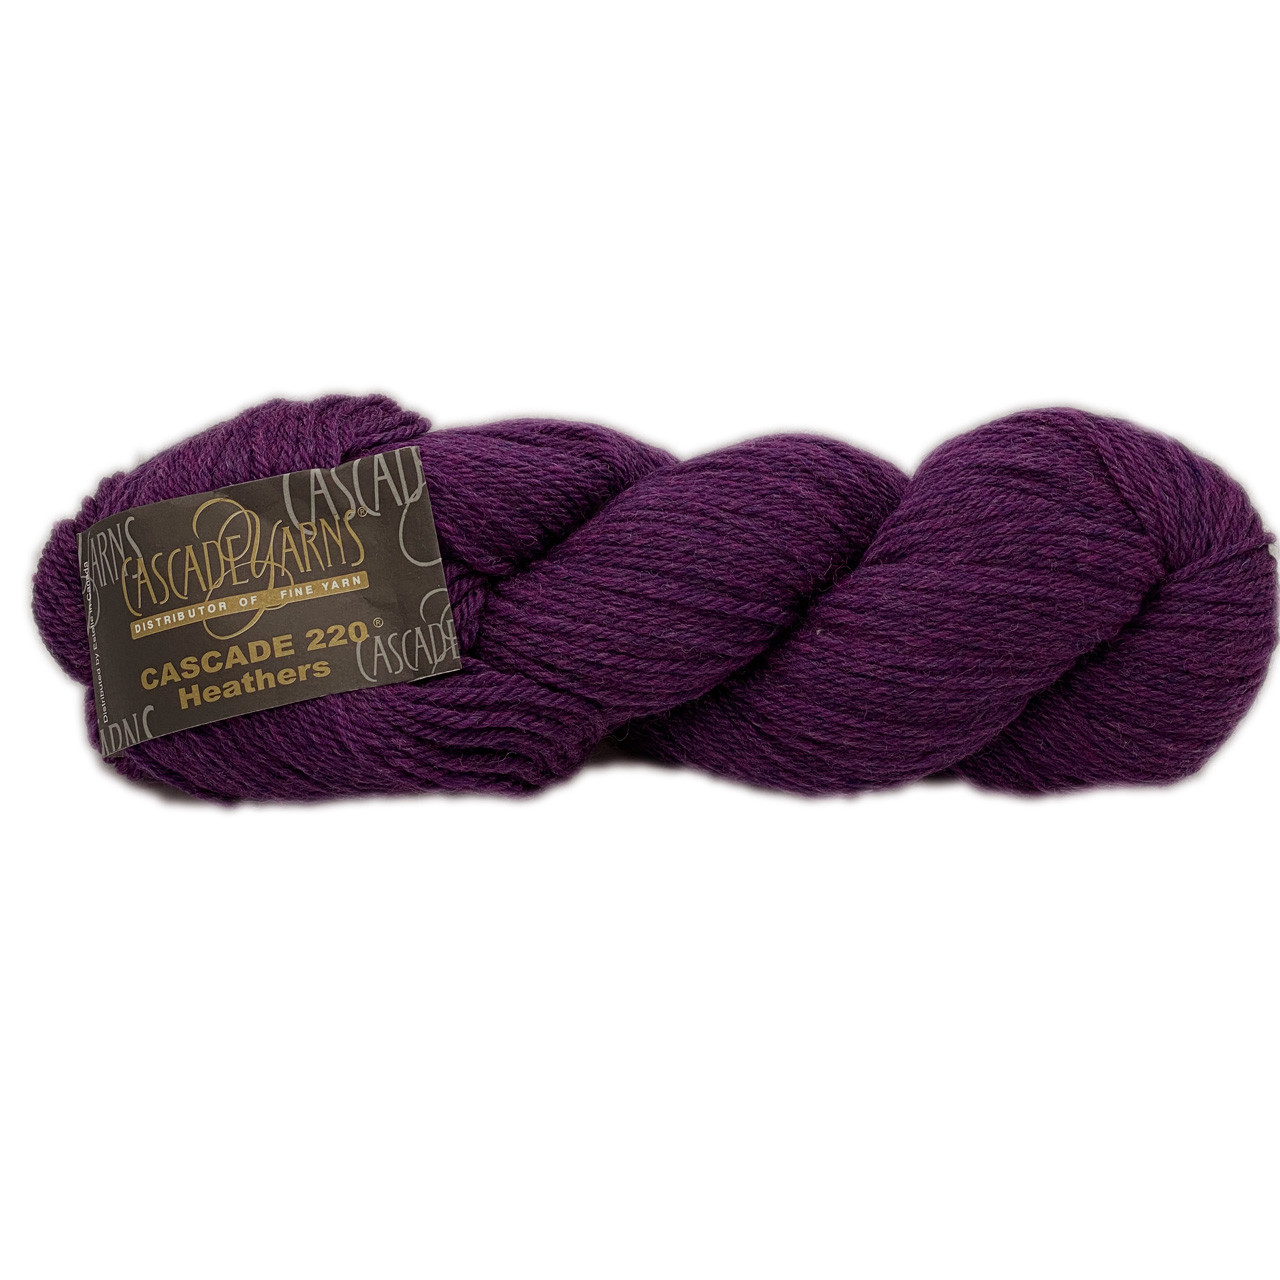 Wool Comb - Cascade Yarns